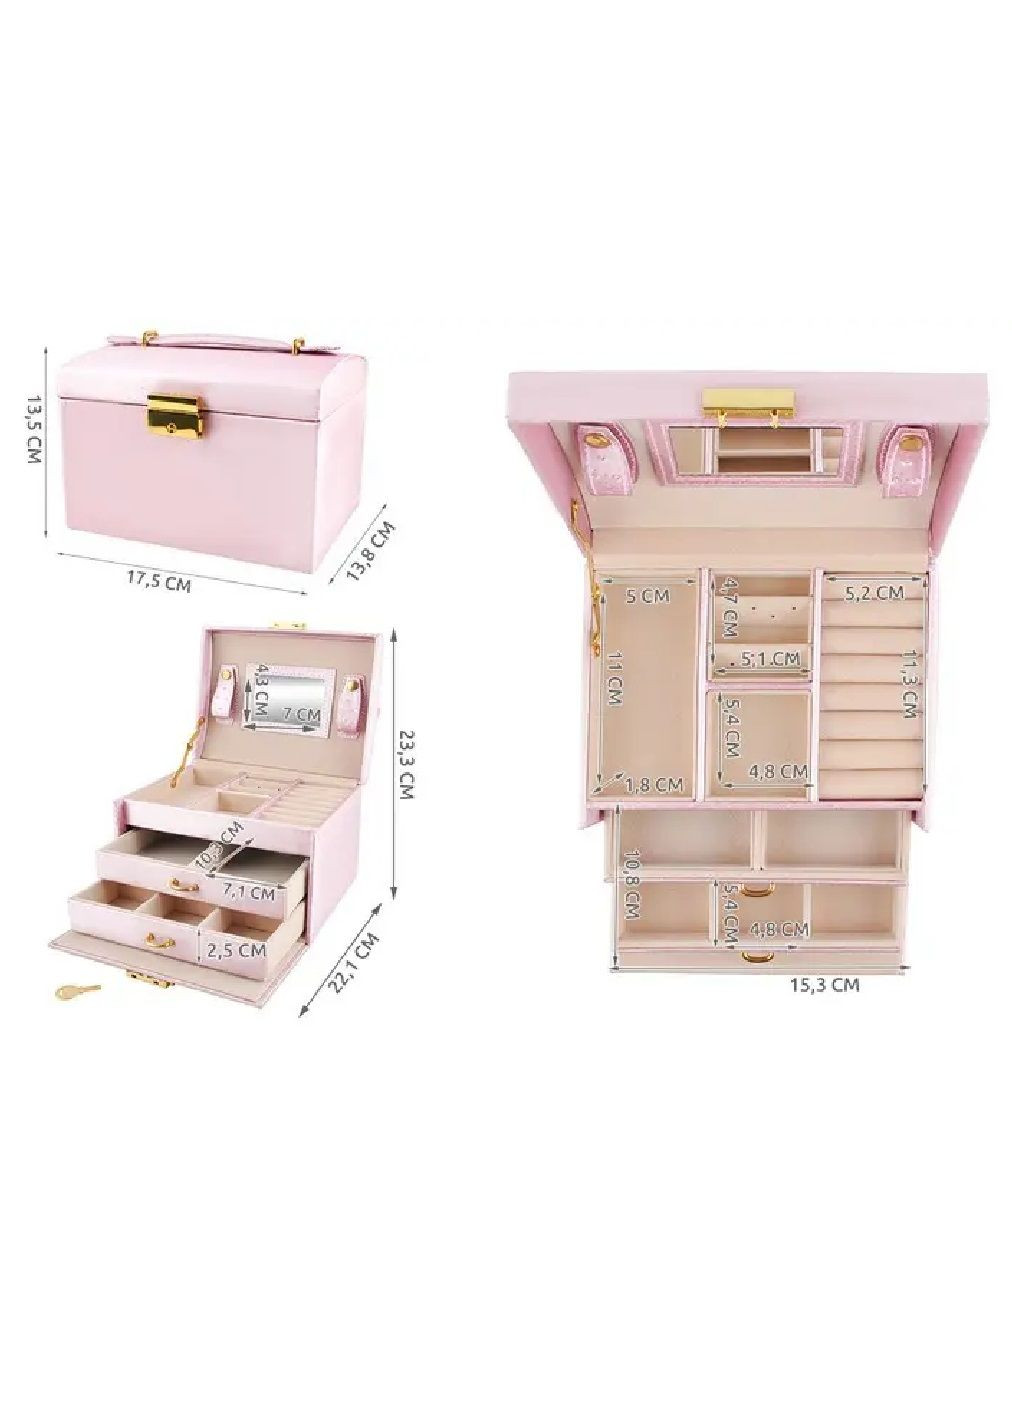 Шкатулка футляр ящик короб бокс органайзер для прикрас коштовностей з ключем 17,5х13,8х13,5 см (476665-Prob) Рожева Unbranded (288044371)